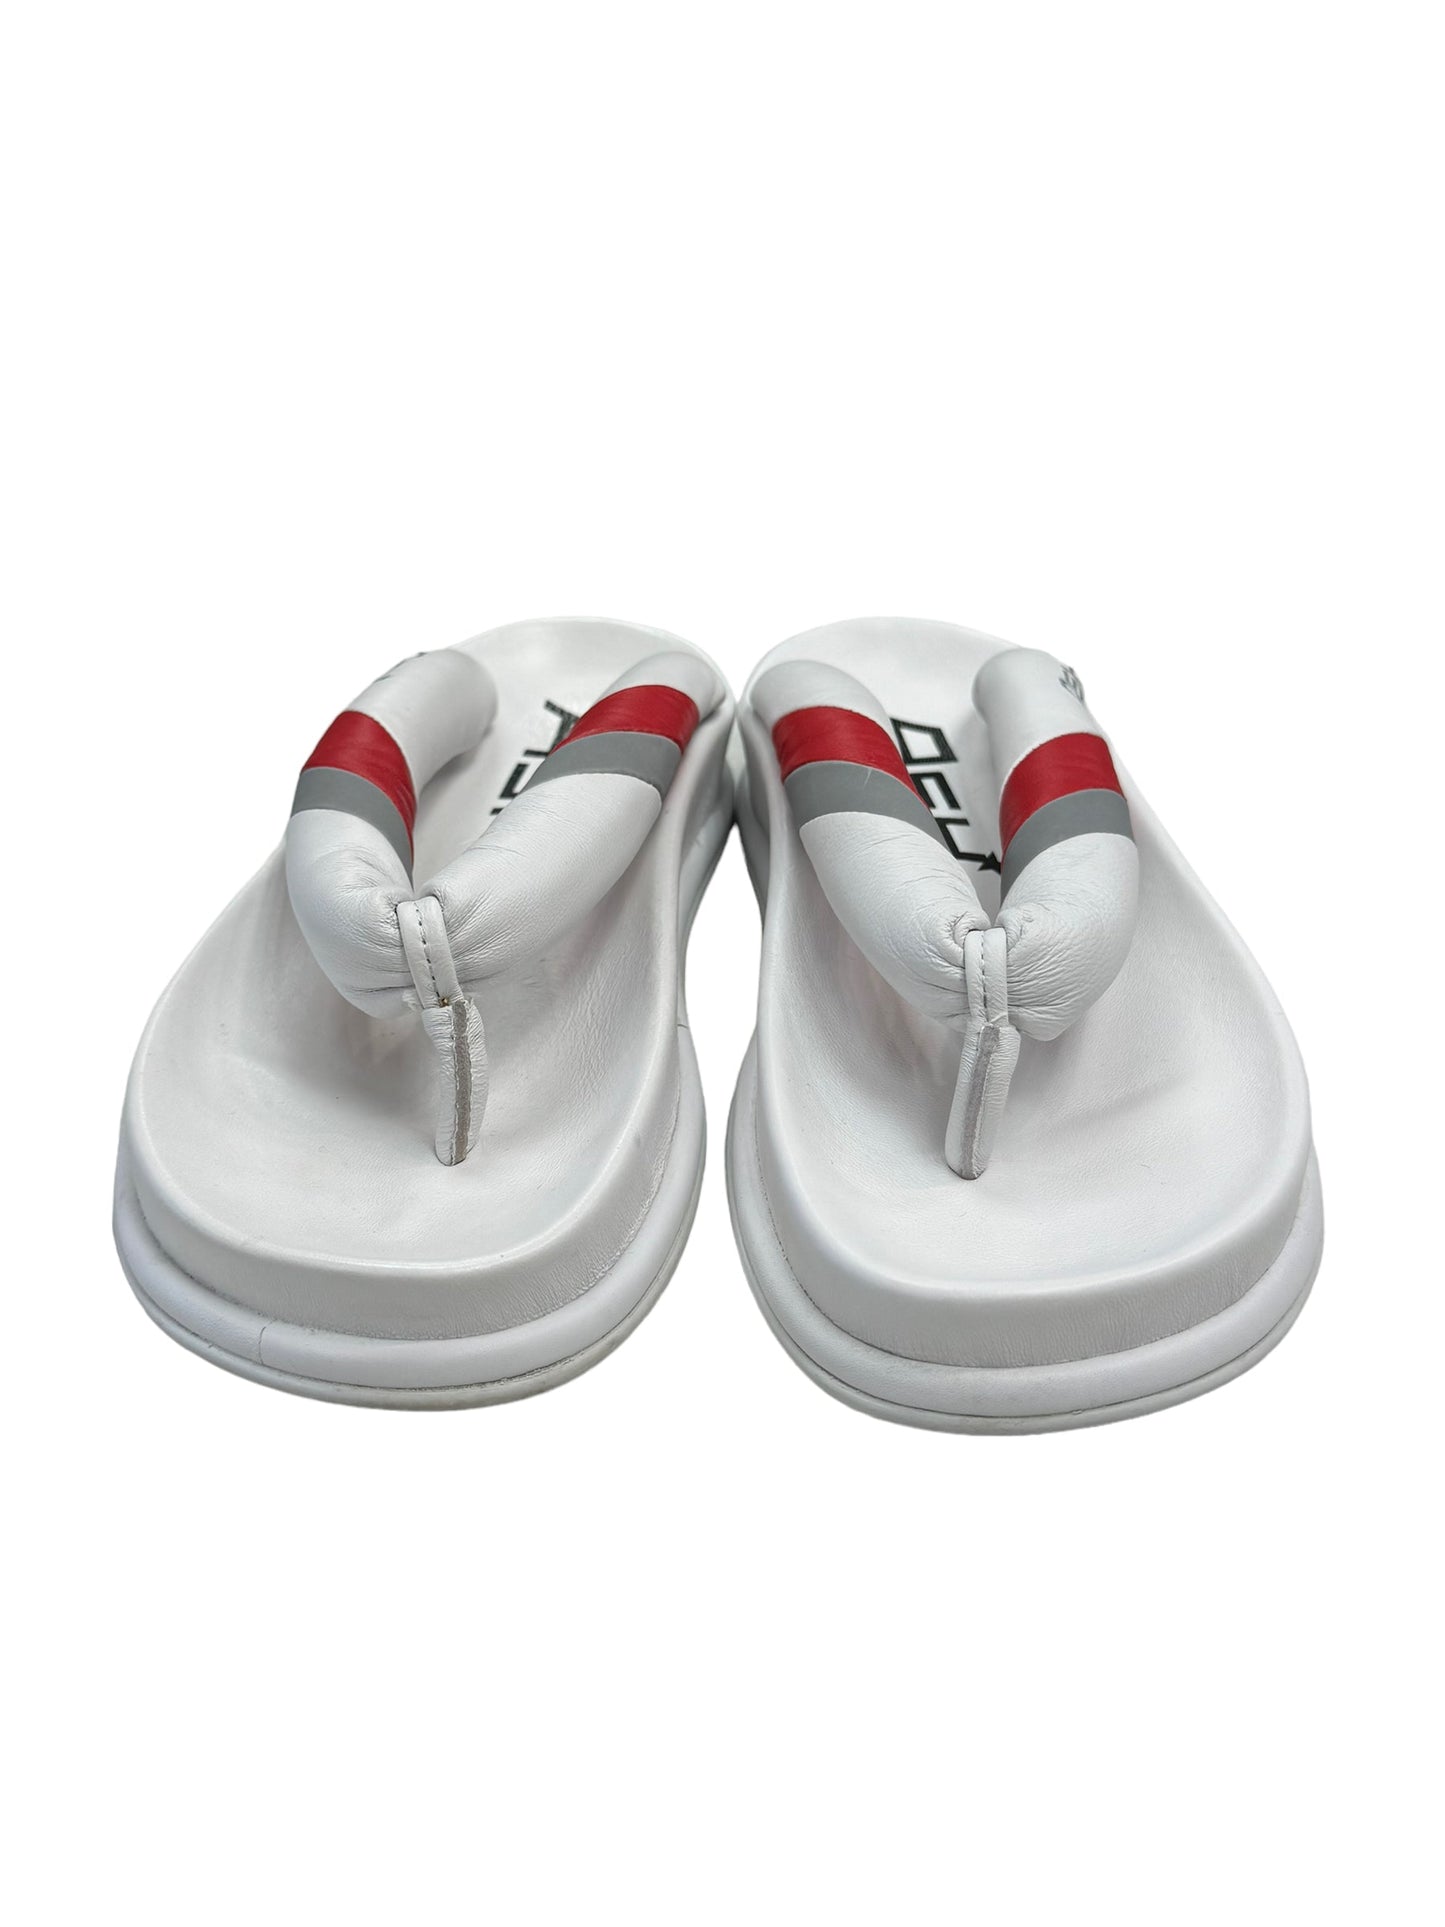 White Sandals Flip Flops Ash, Size 6.5